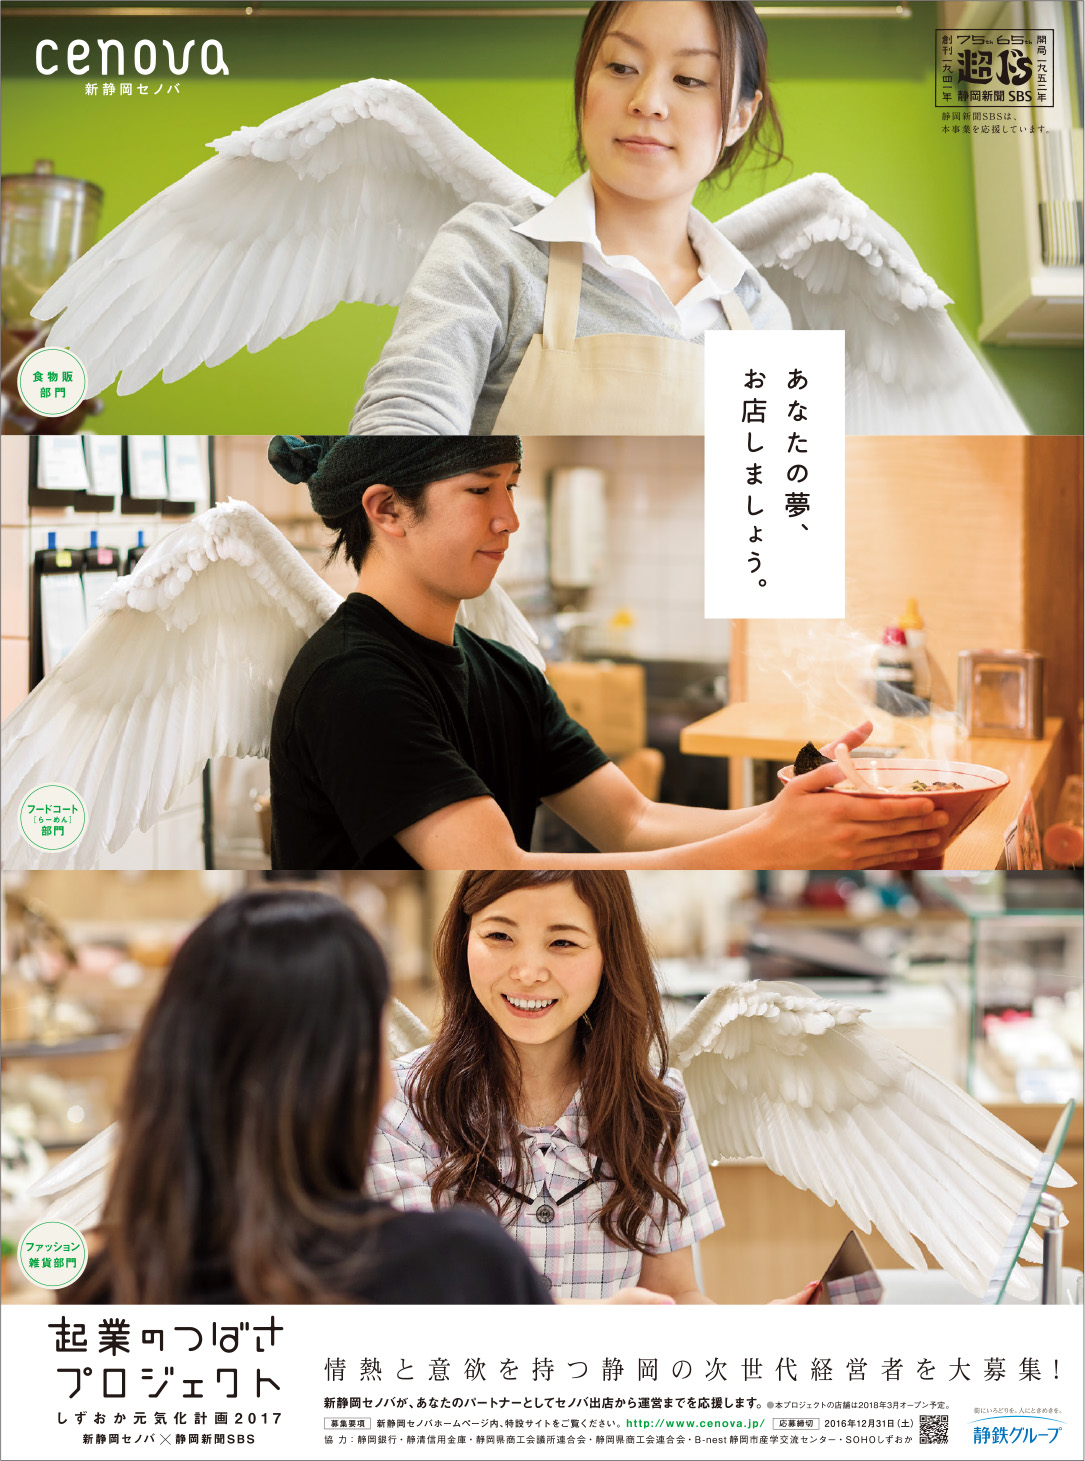 新静岡セノバ 起業のつばさプロジェクト Sbsプロモーション 広告